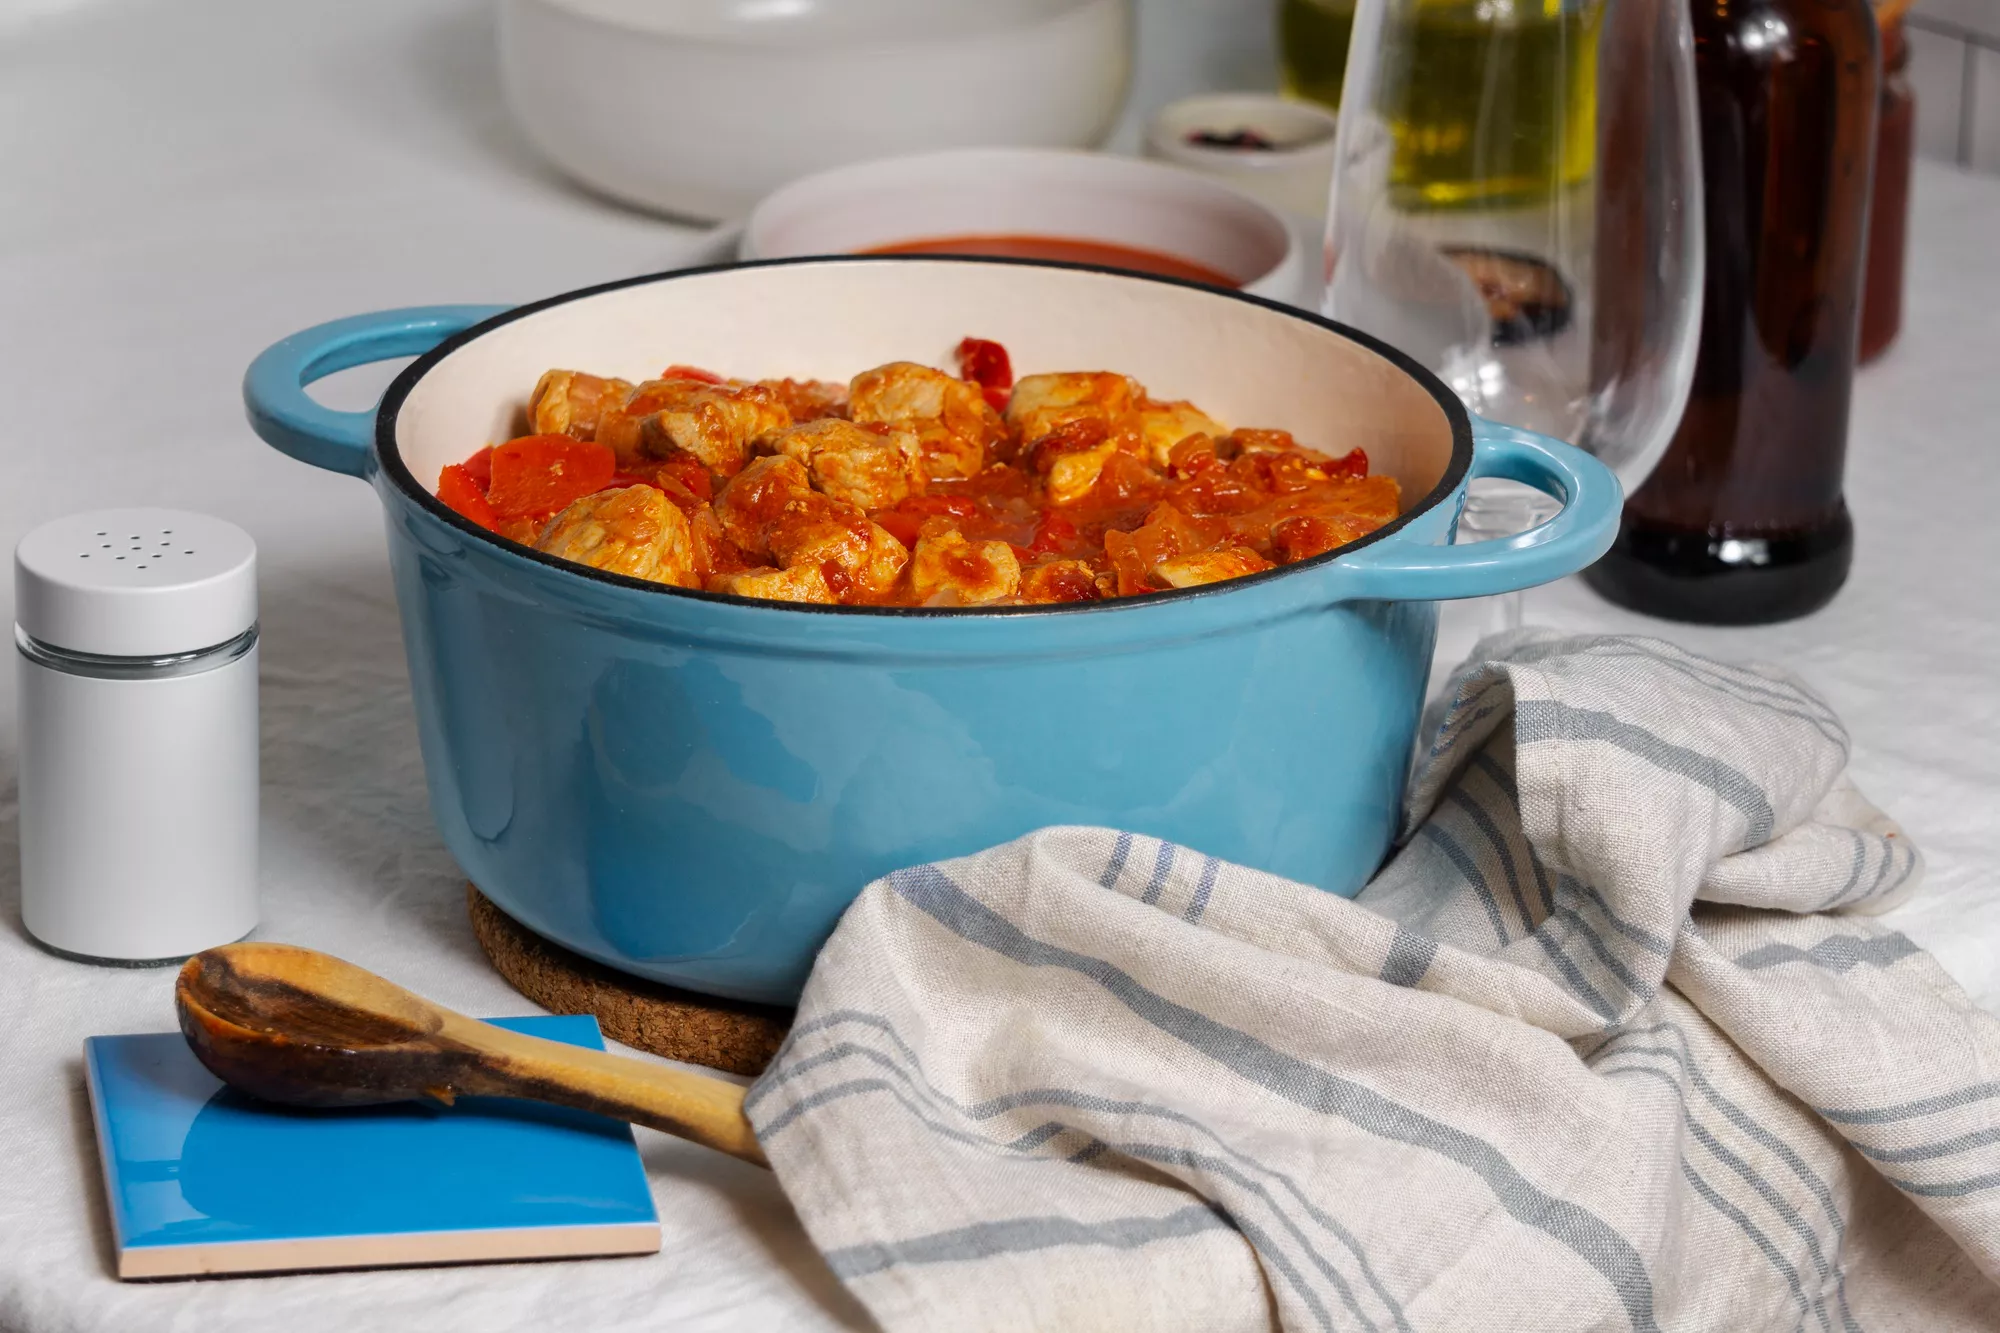 鑄鐵鍋、琺瑯平底鍋等用品，對於喜歡烹飪的人來說實用性很高。